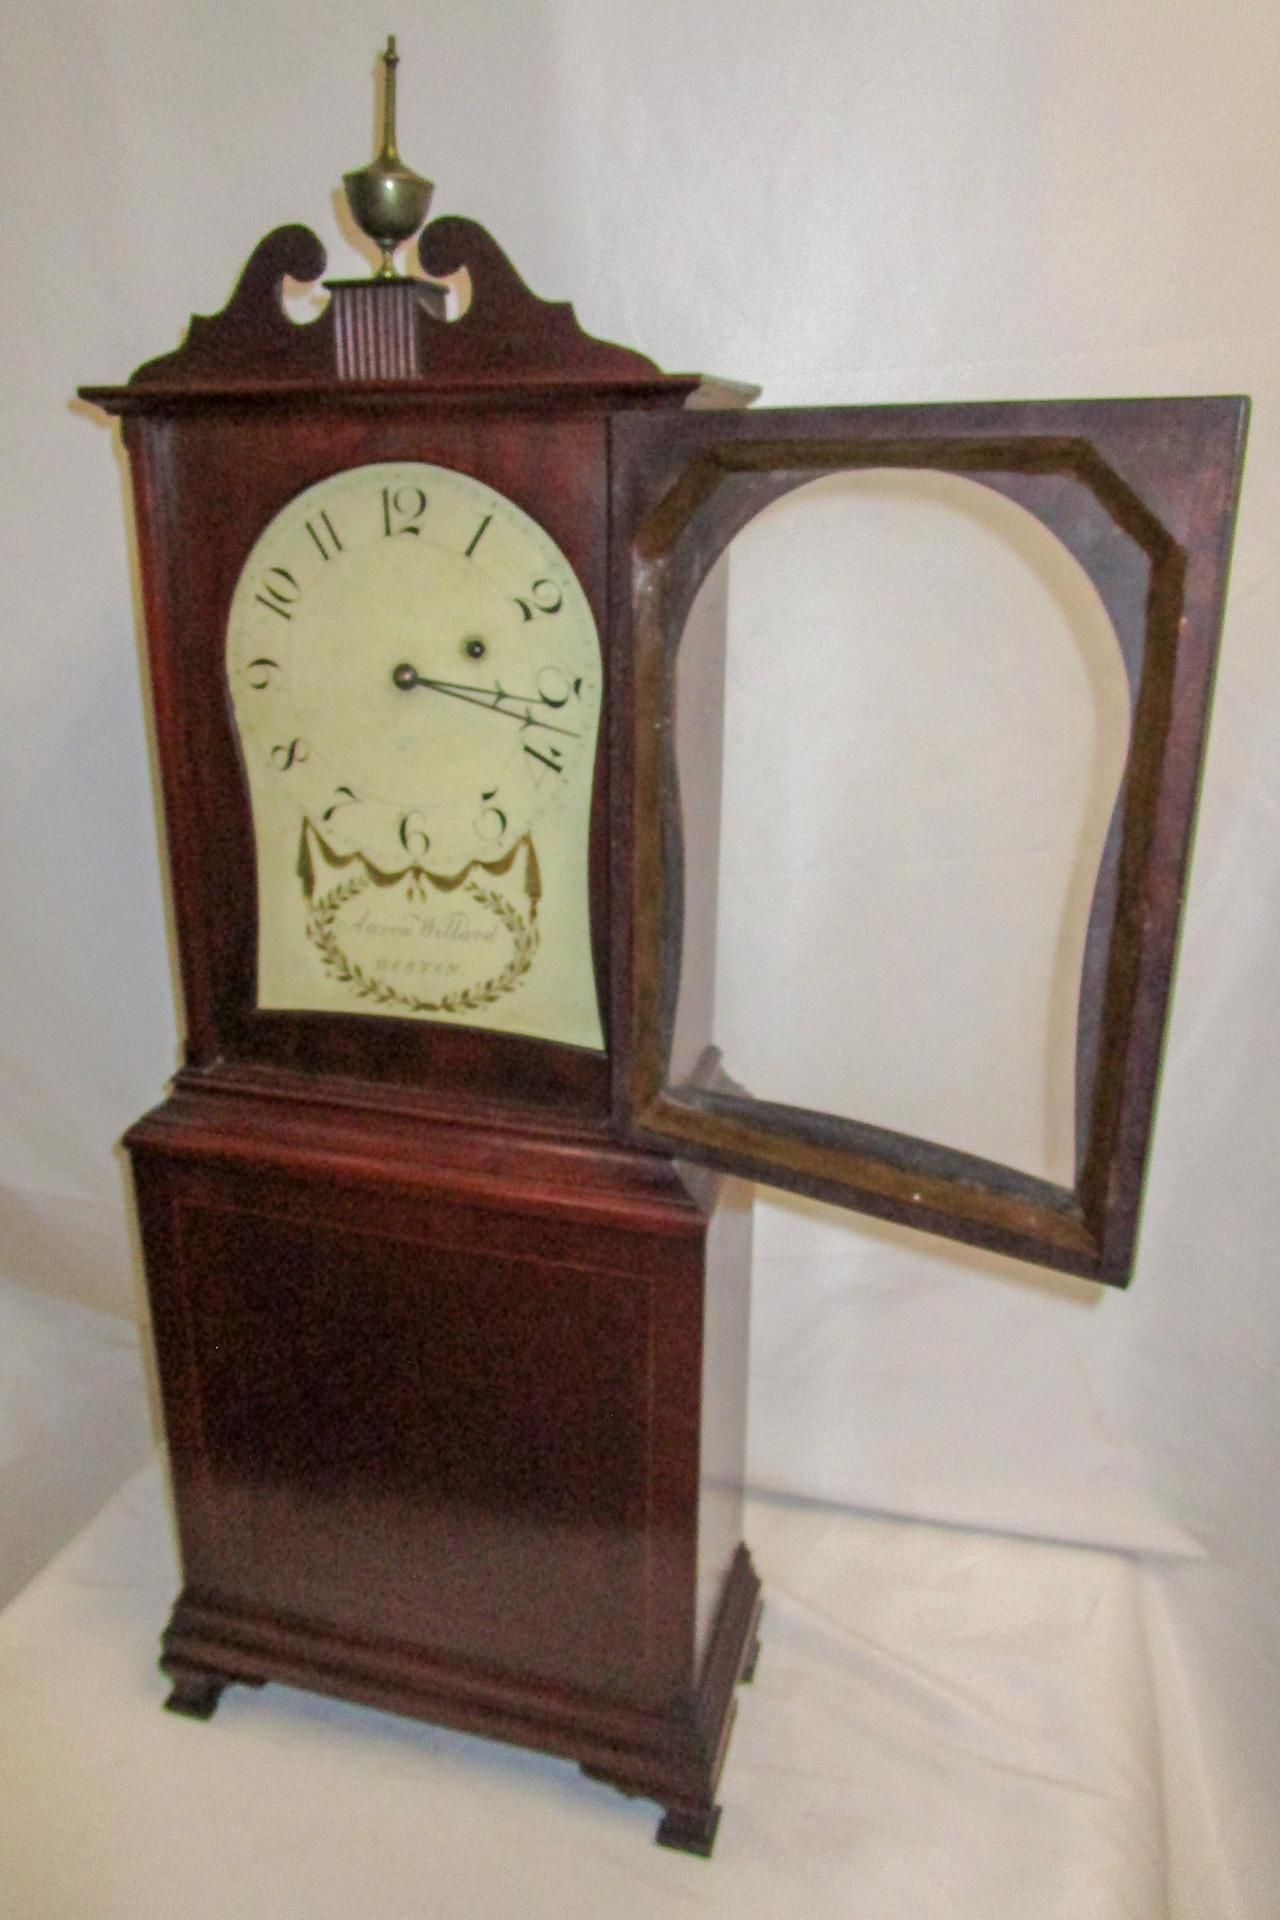 Cette magnifique horloge d'étagère présente un fronton arqué et incrusté au-dessus d'un cadran peint signé 